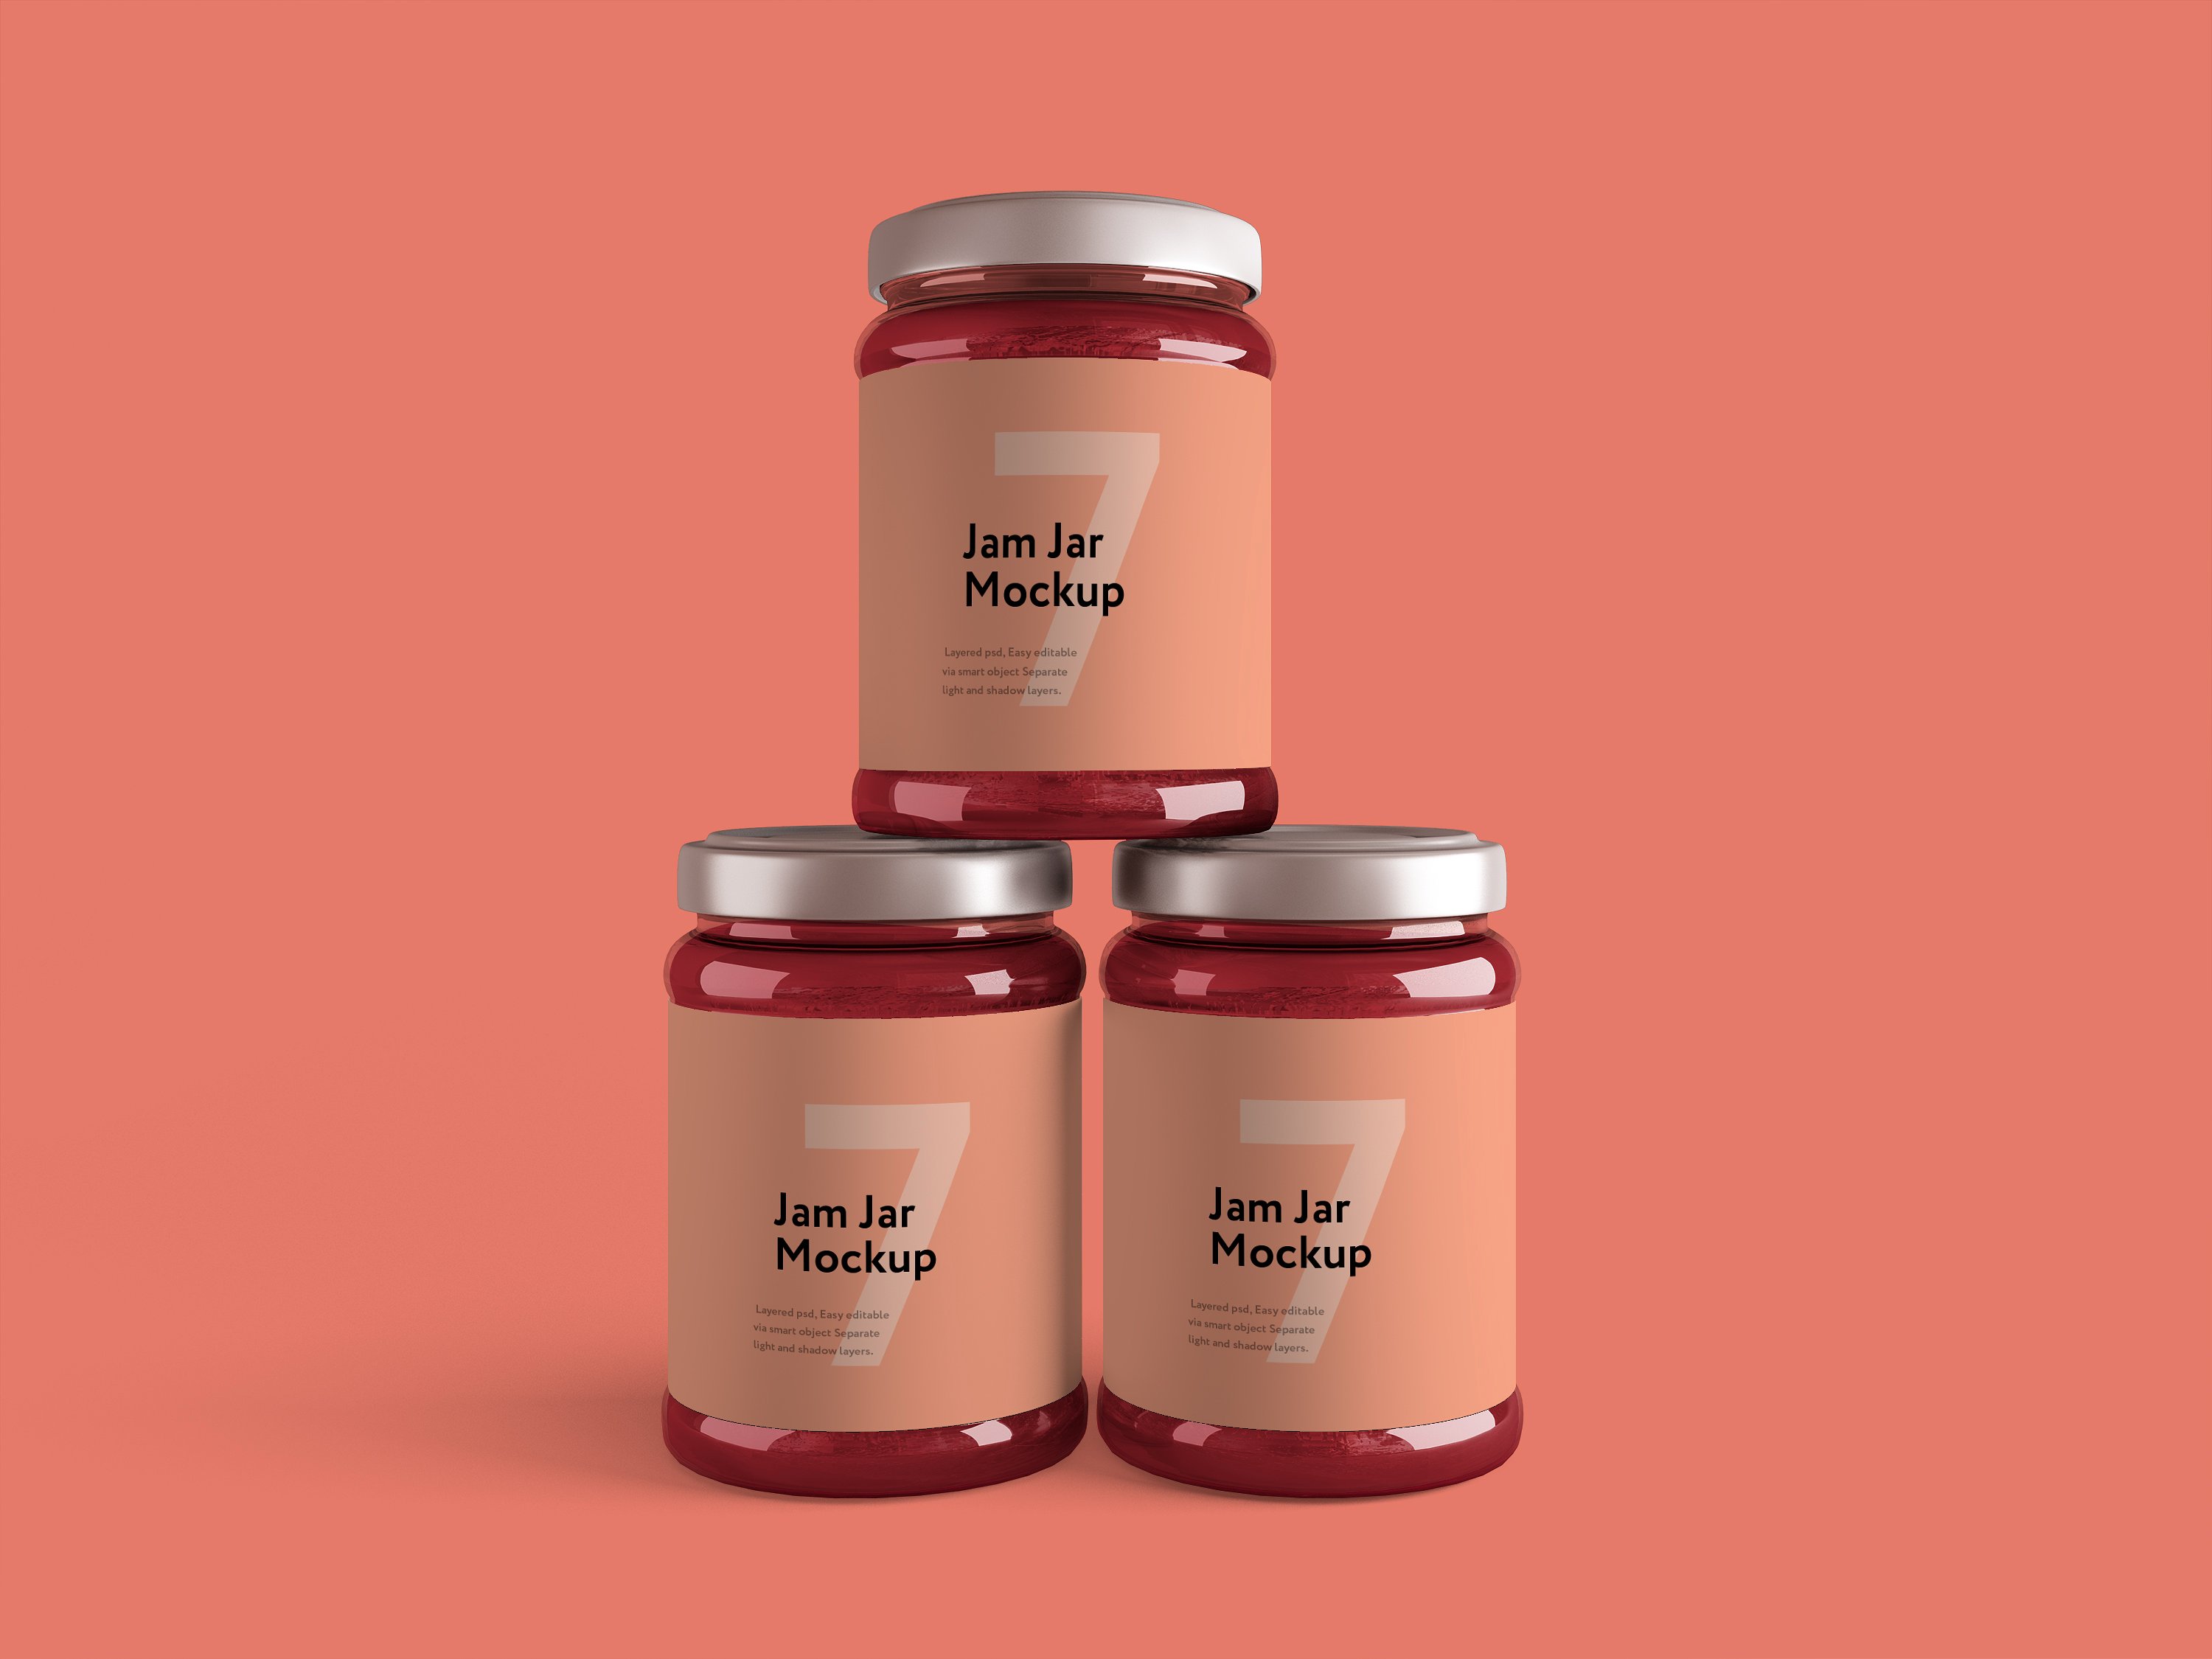 粉色果酱玻璃瓶外观设计效果图样机模板 Jam Jar Mockup插图2